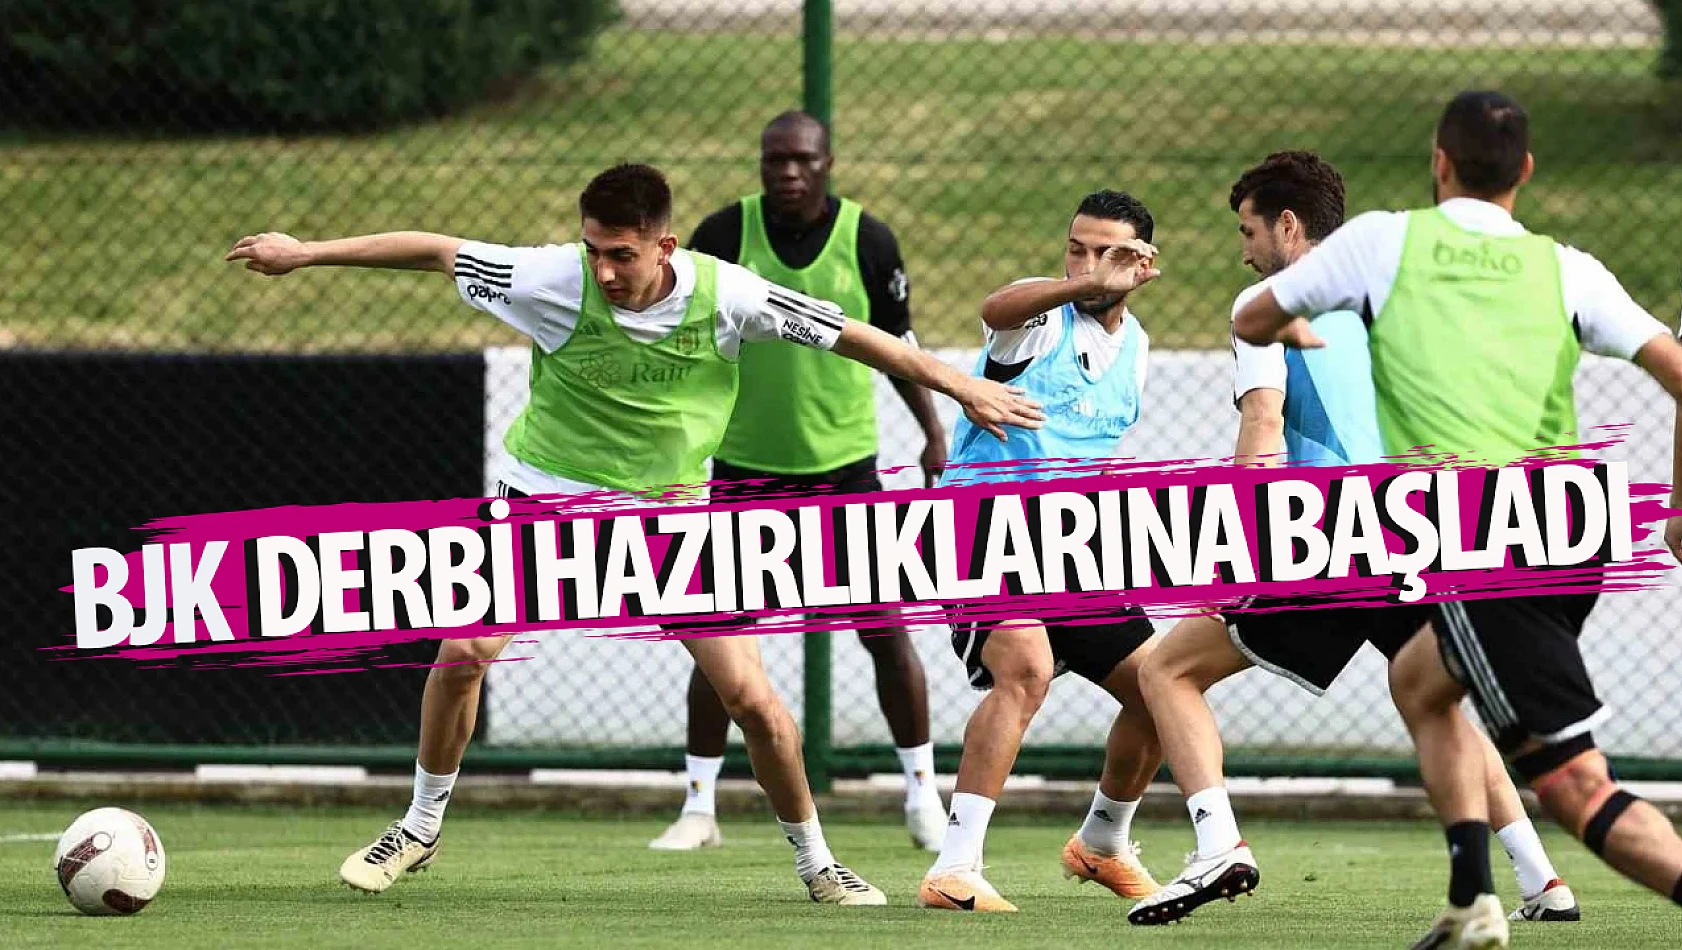 Beşiktaş, derbi hazırlıklarına başladı